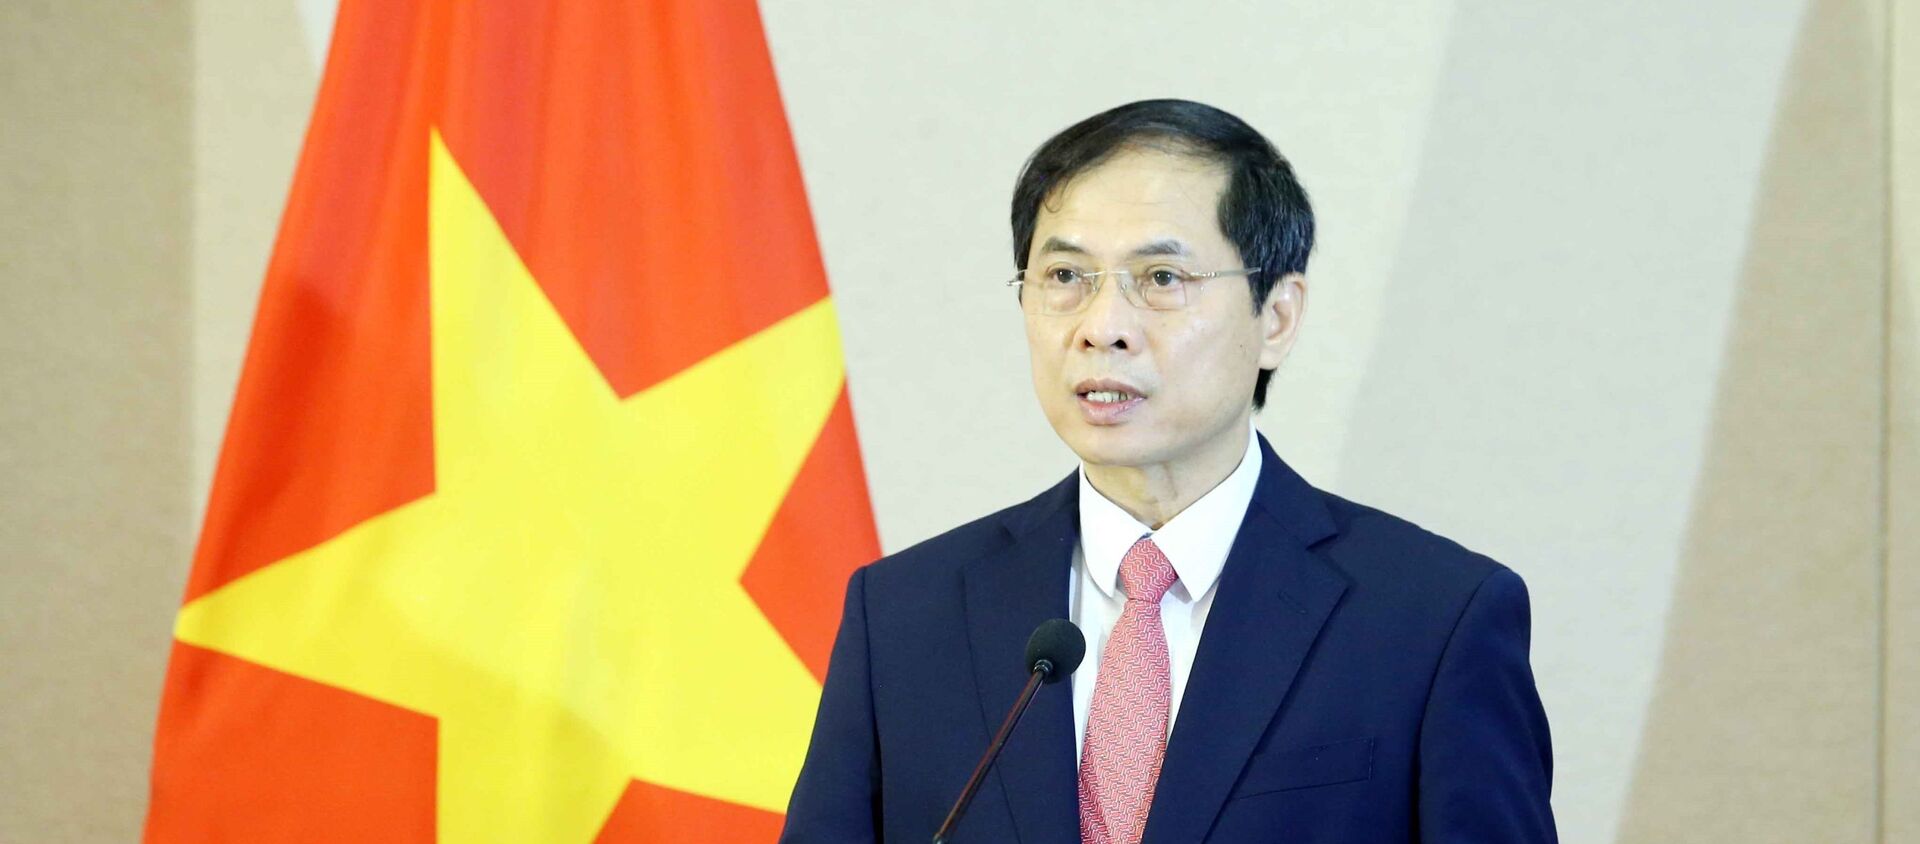 Bộ trưởng Bộ Ngoại giao Bùi Thanh Sơn phát biểu tại Lễ chào cờ ASEAN theo hình thức trực tuyến tại điểm cầu Hà Nội. - Sputnik Việt Nam, 1920, 23.08.2021